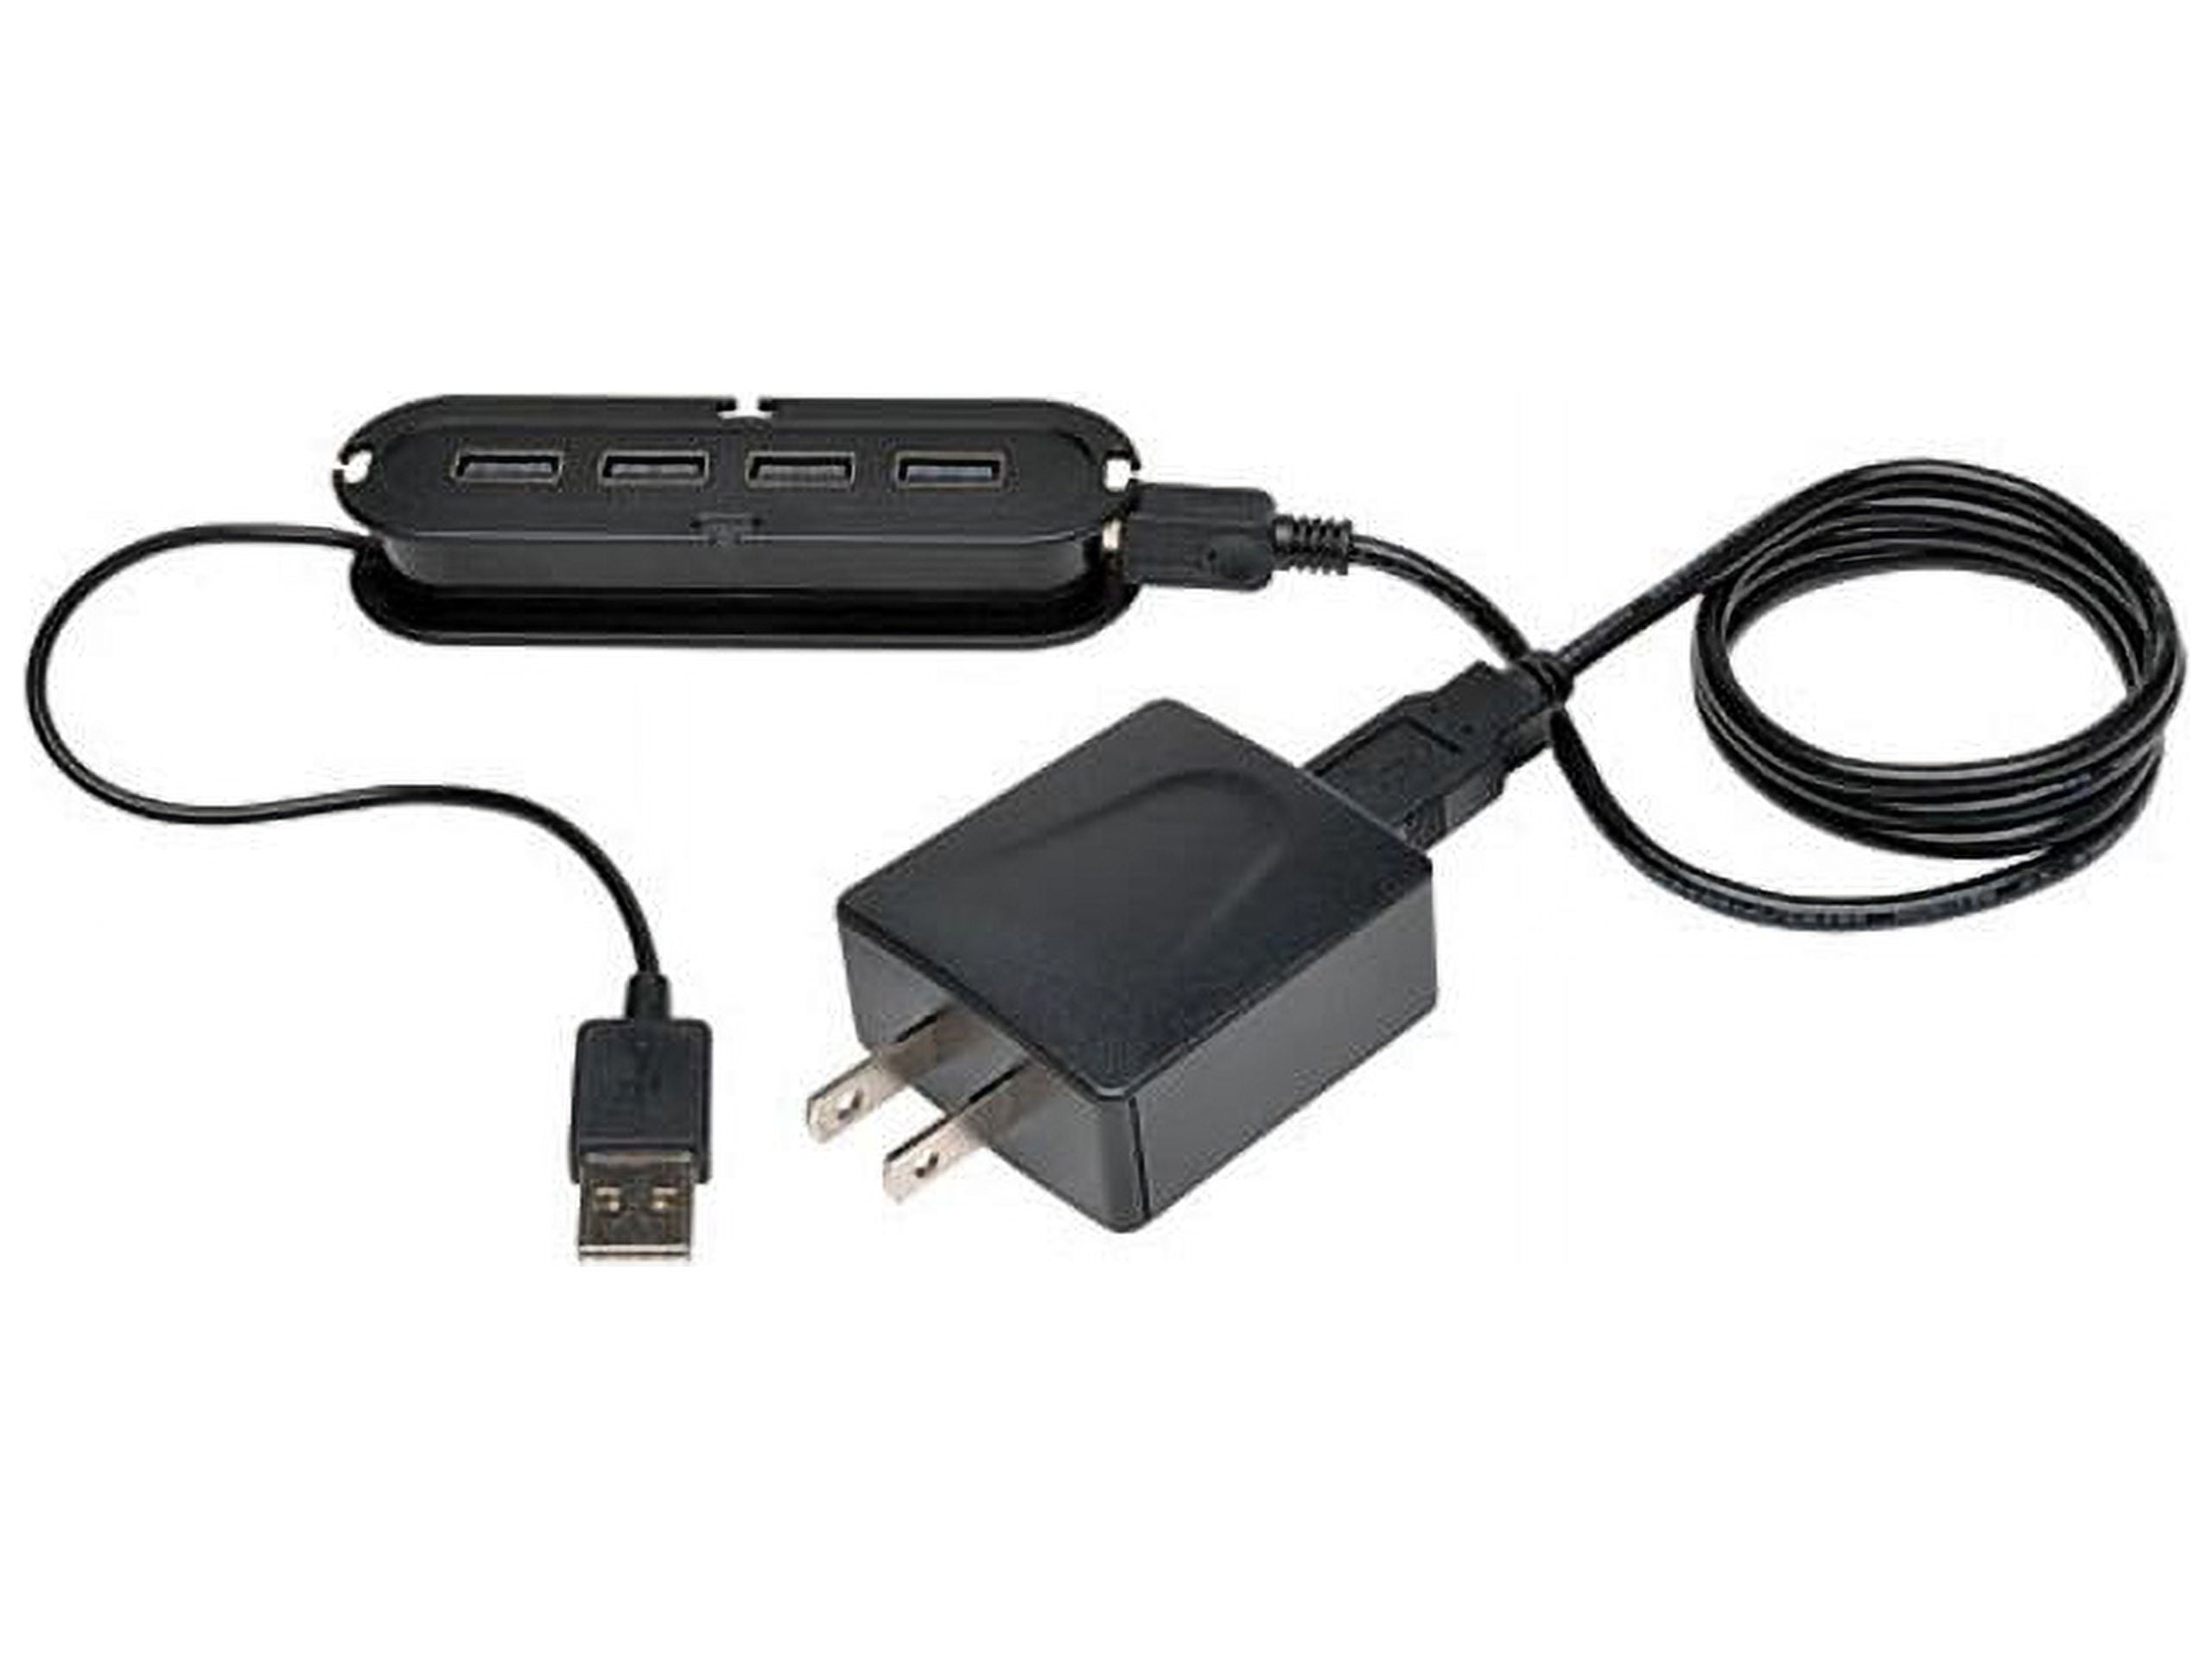 4-Port USB 2.0 Ultra-Mini Hub